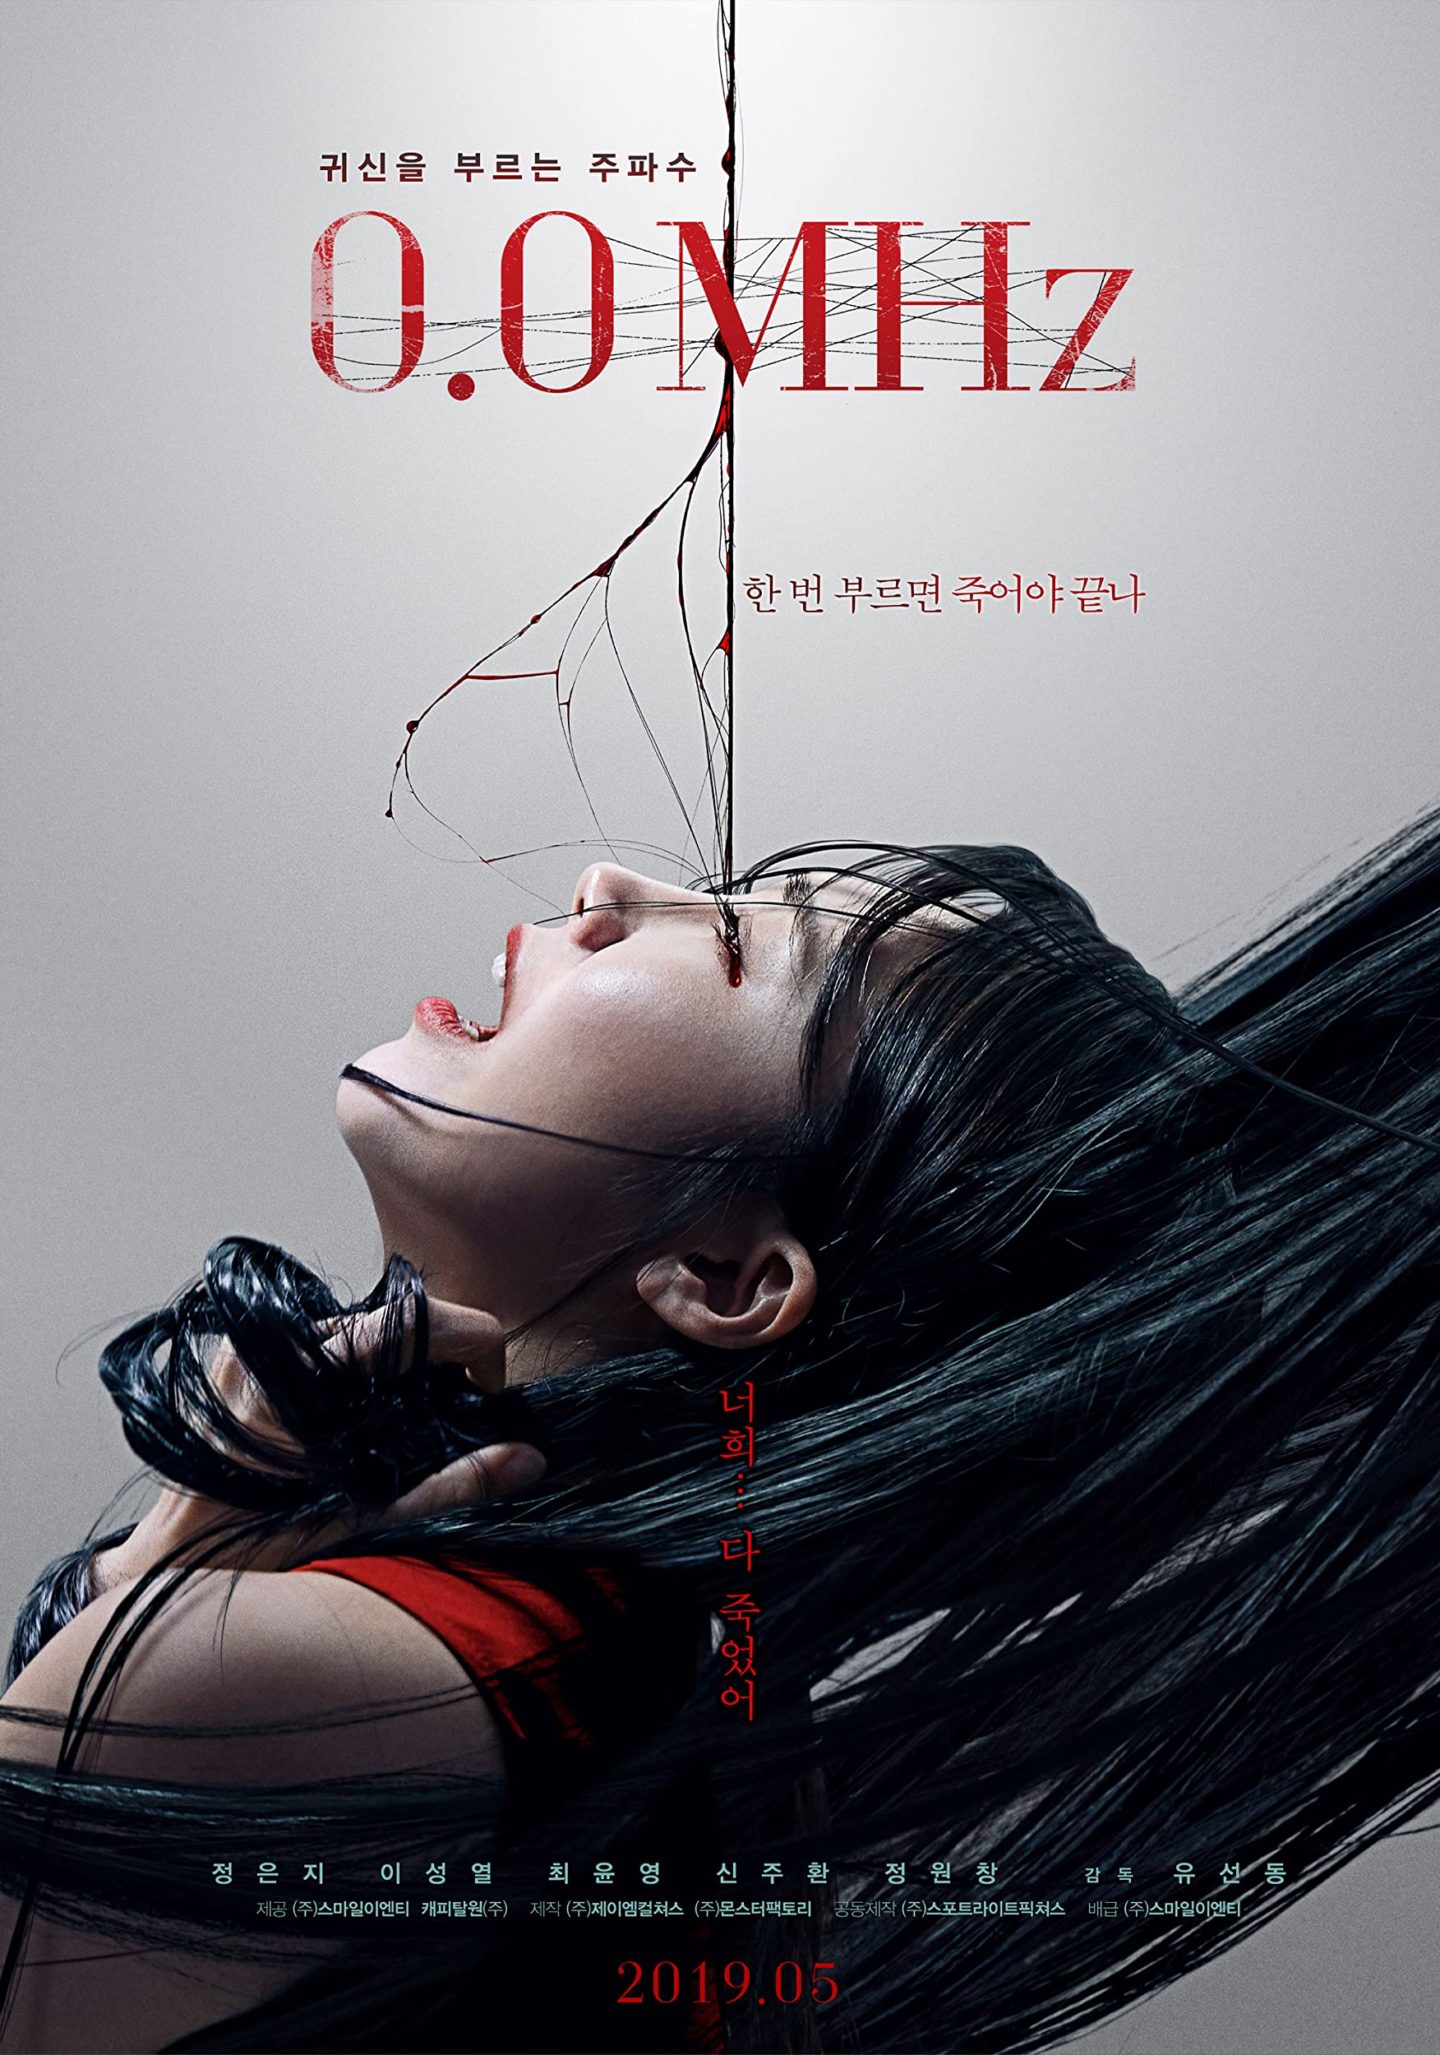 0.0 Mhz - Teaser Poster